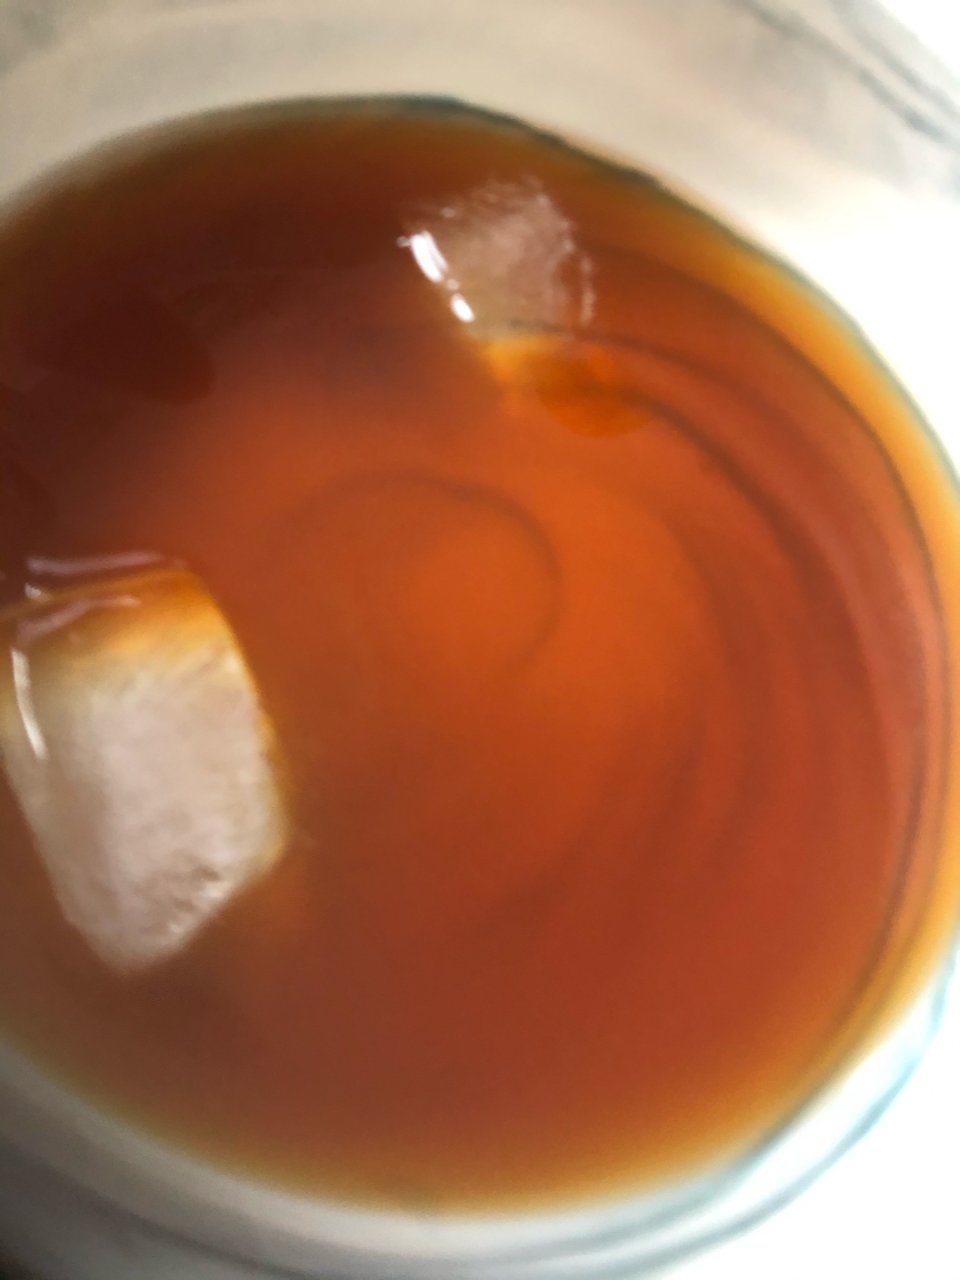 冰红茶